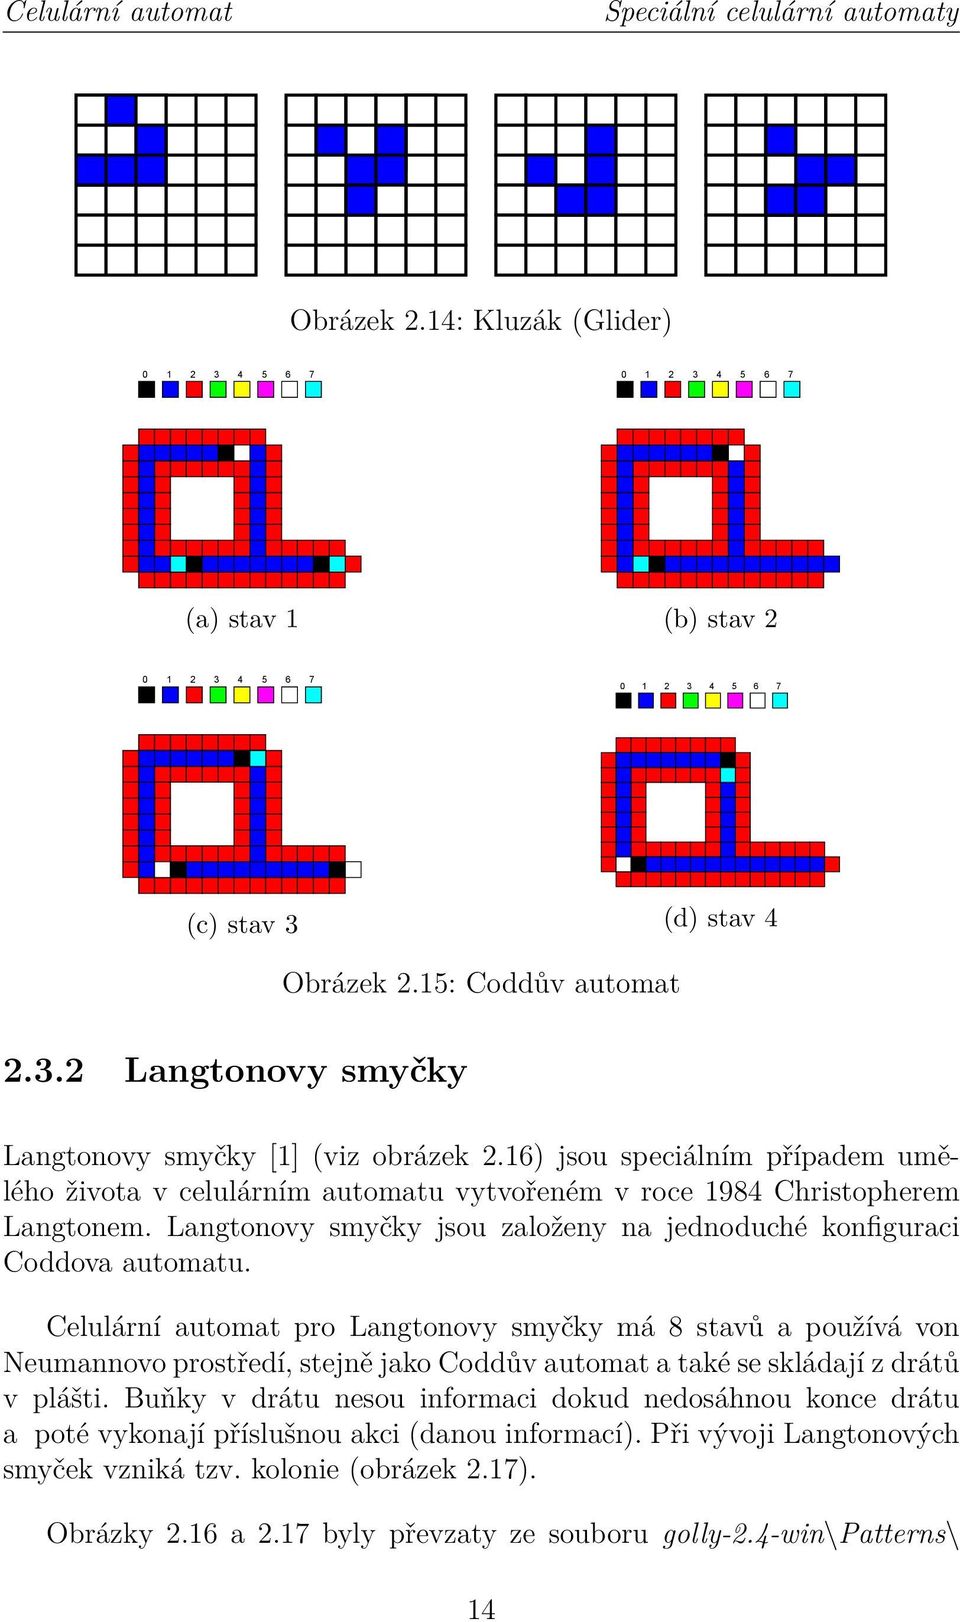 Langtonovy smyčky jsou založeny na jednoduché konfiguraci Coddova automatu.